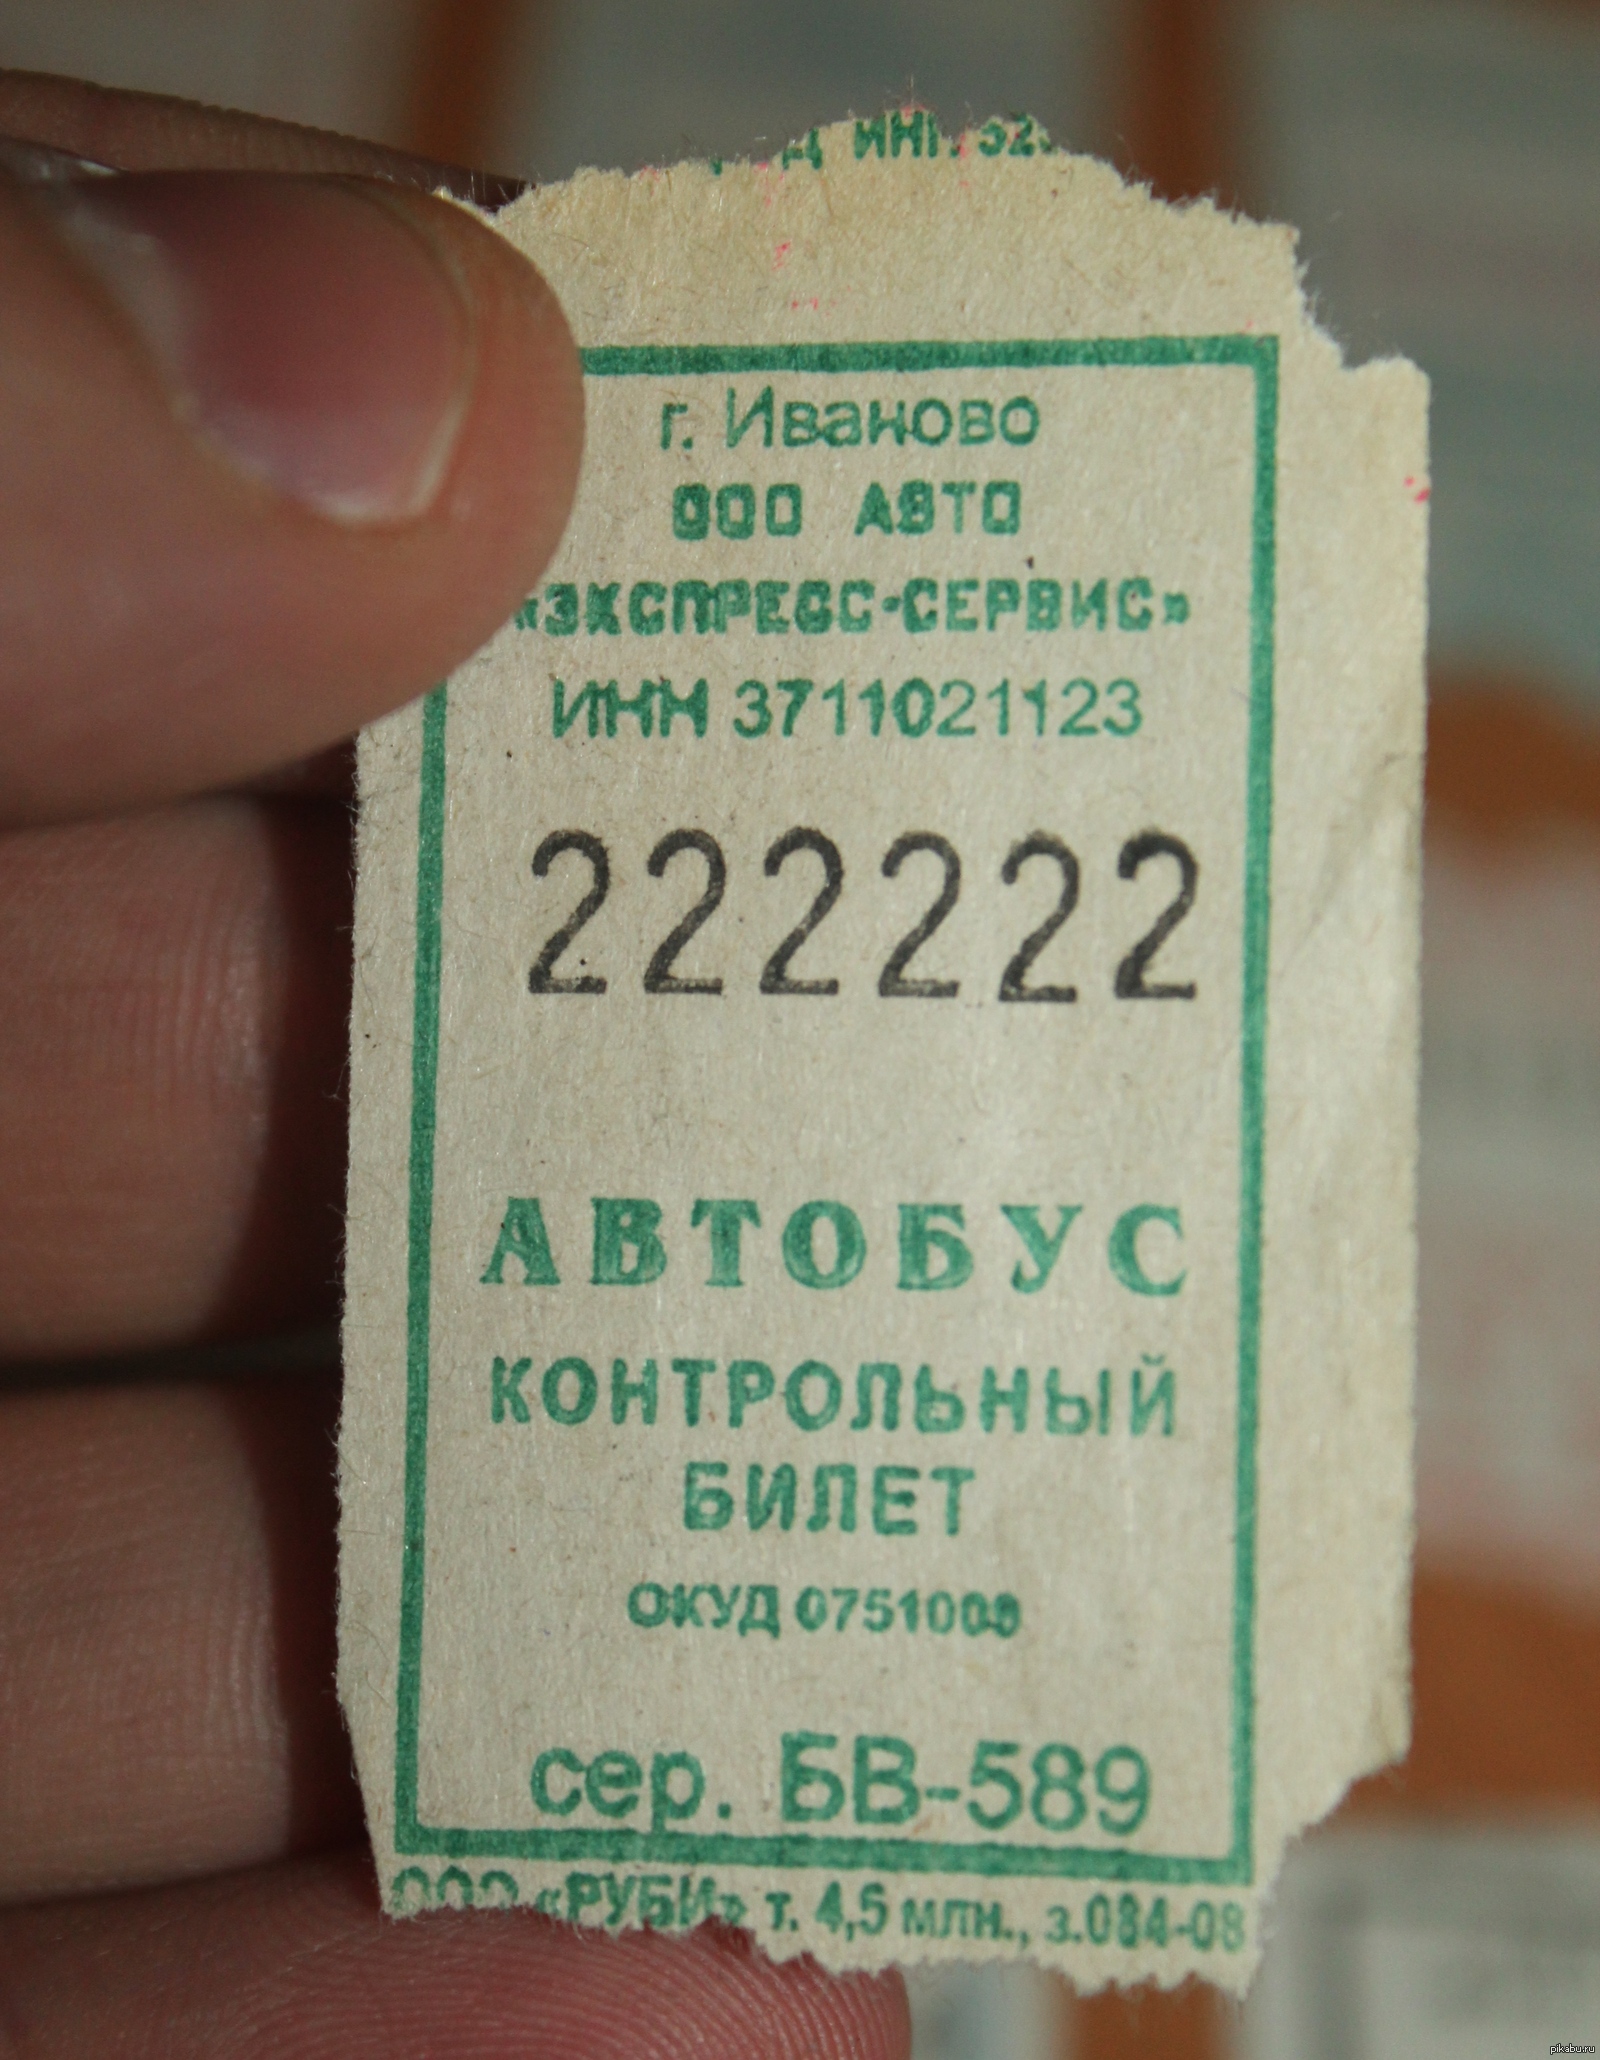 Автобусные билеты имеют номера